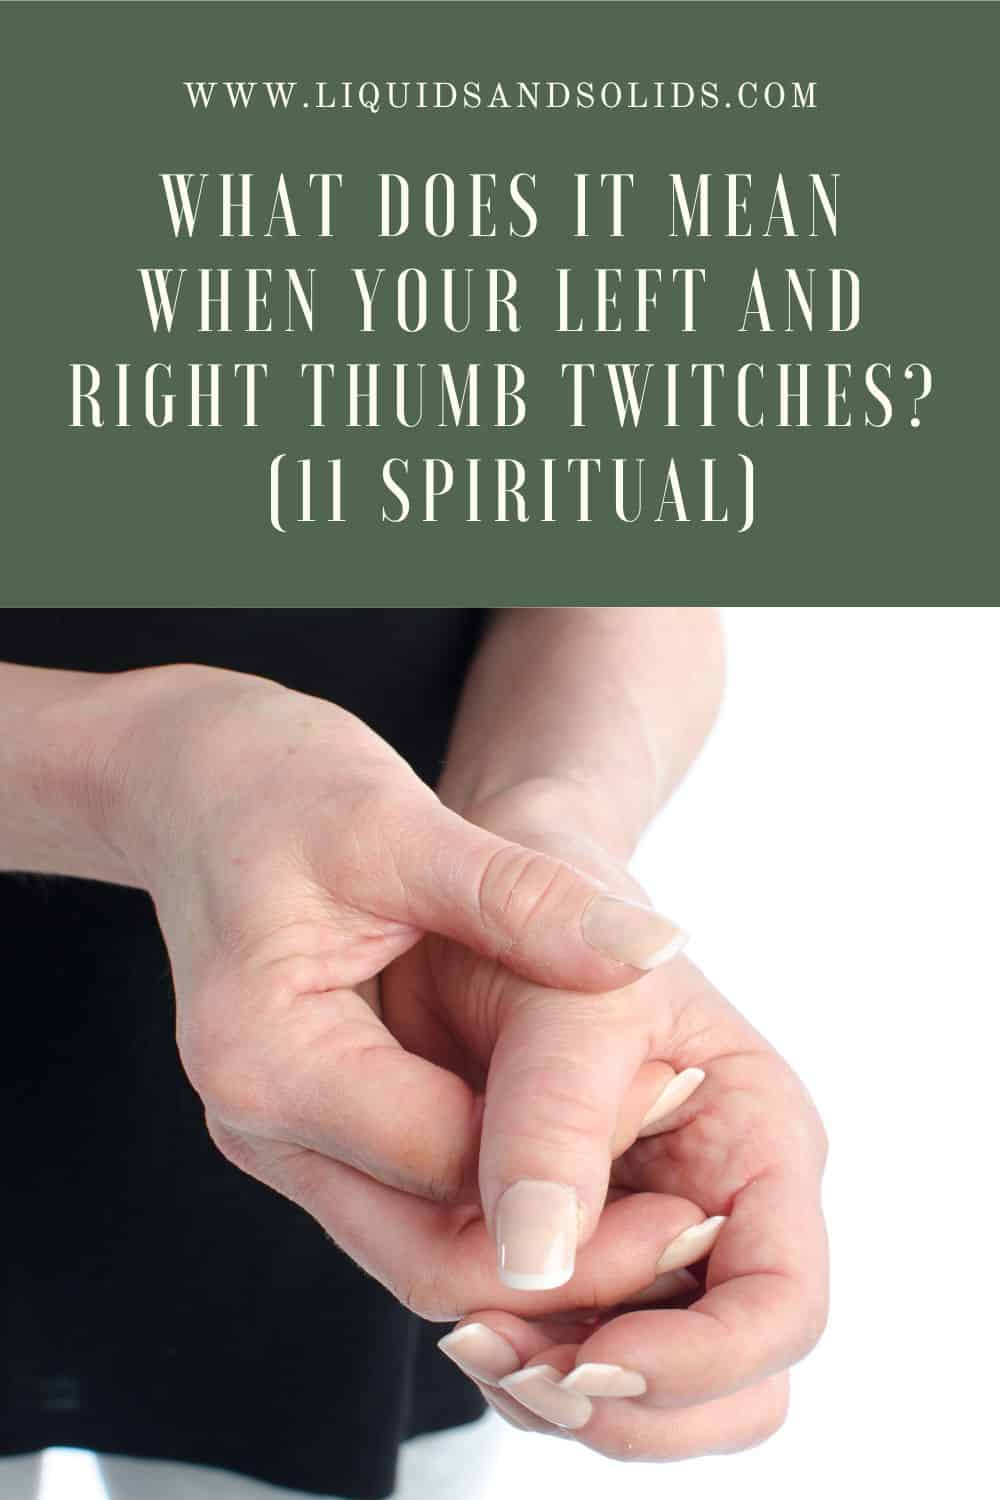  ماذا يعني عندما تشنجات الإبهام الأيمن والأيسر؟ (11 معاني روحية)